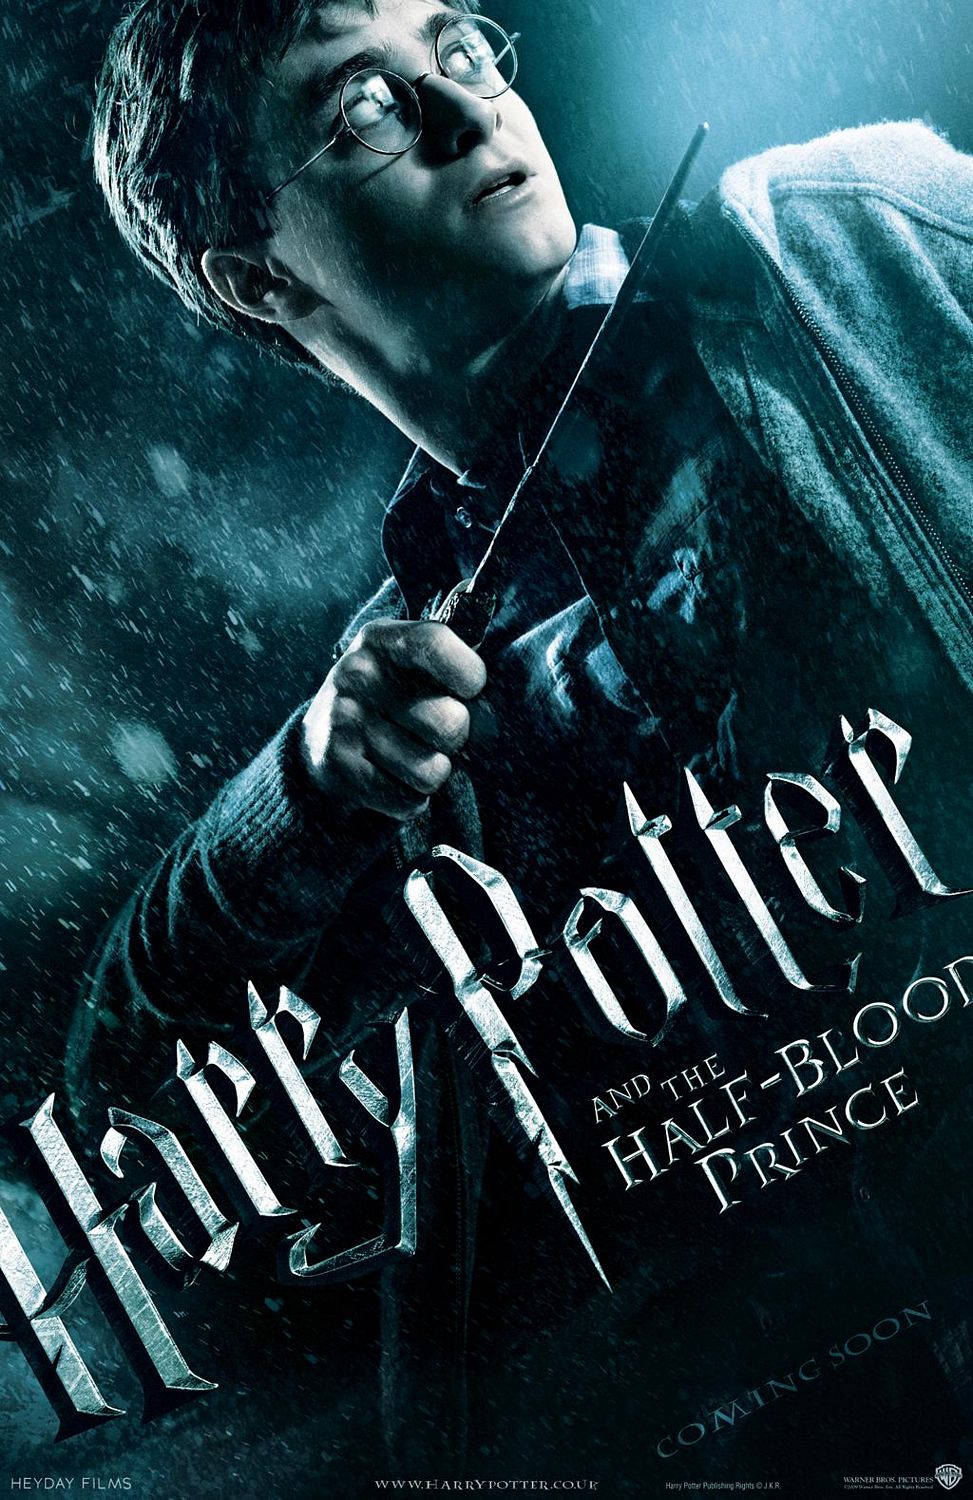 Смотреть кино онлайн Гарри Поттер 6 и Принц Полукровки/Harry Potter 6 and the Half-Blood Prince (2010)